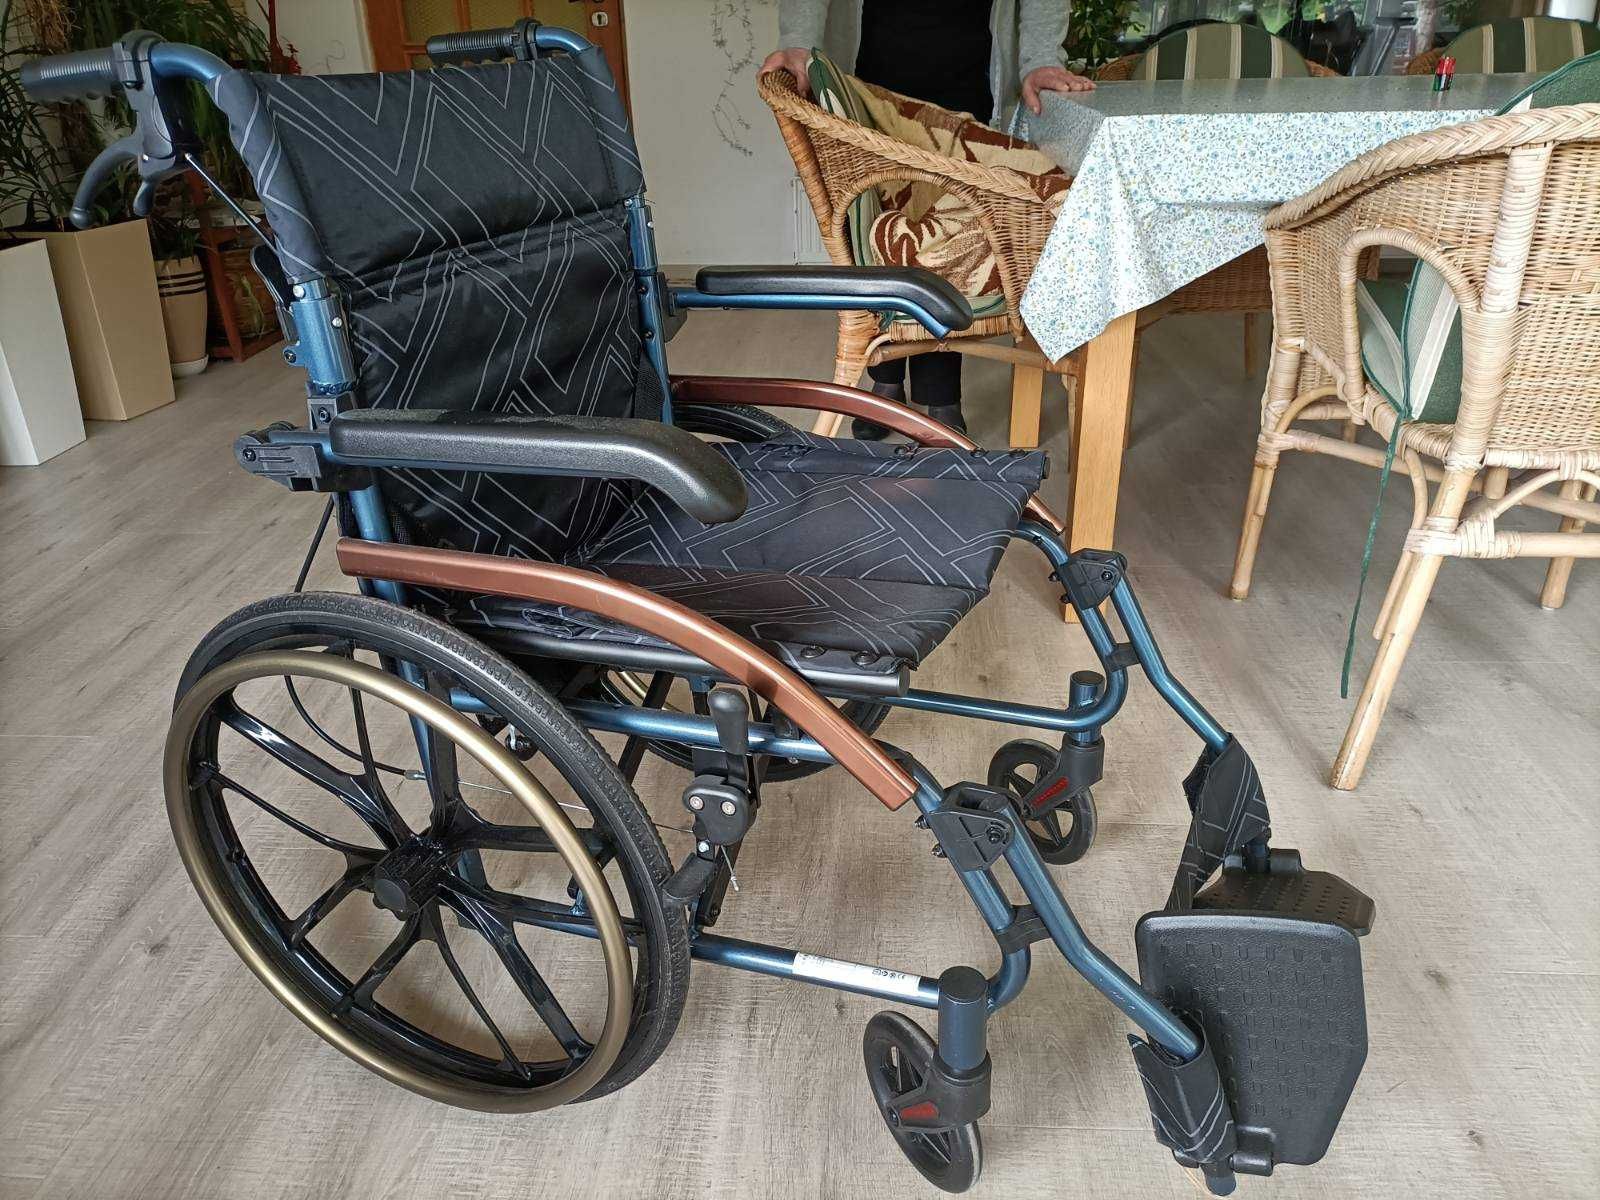 Wózek inwalidzki praktycznie nowy w doskonałym stanie